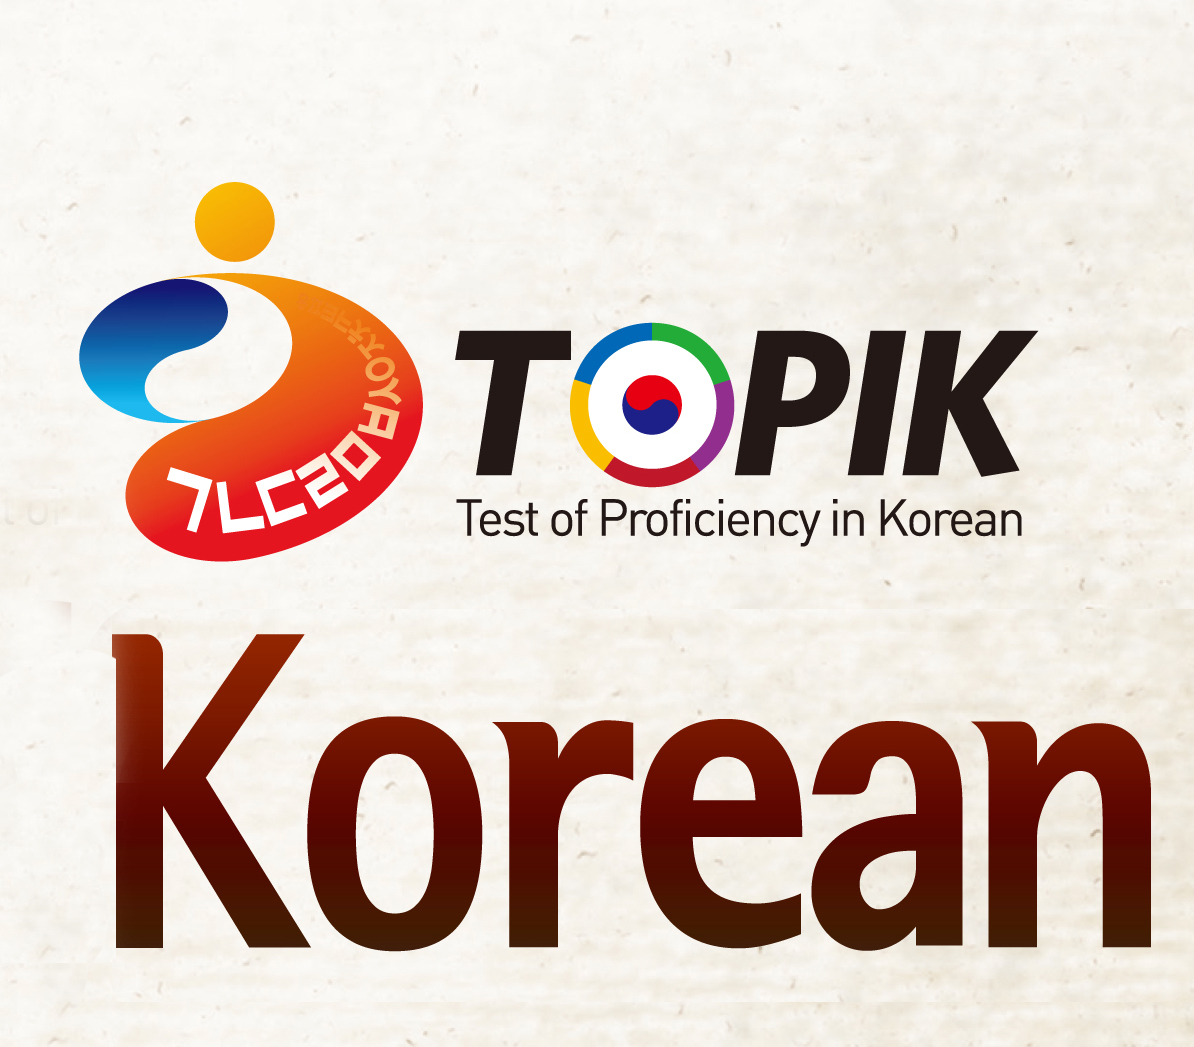 TOPIK là chứng chỉ đánh giá năng lực sử dụng tiếng Hàn được công nhận phổ biến nhất